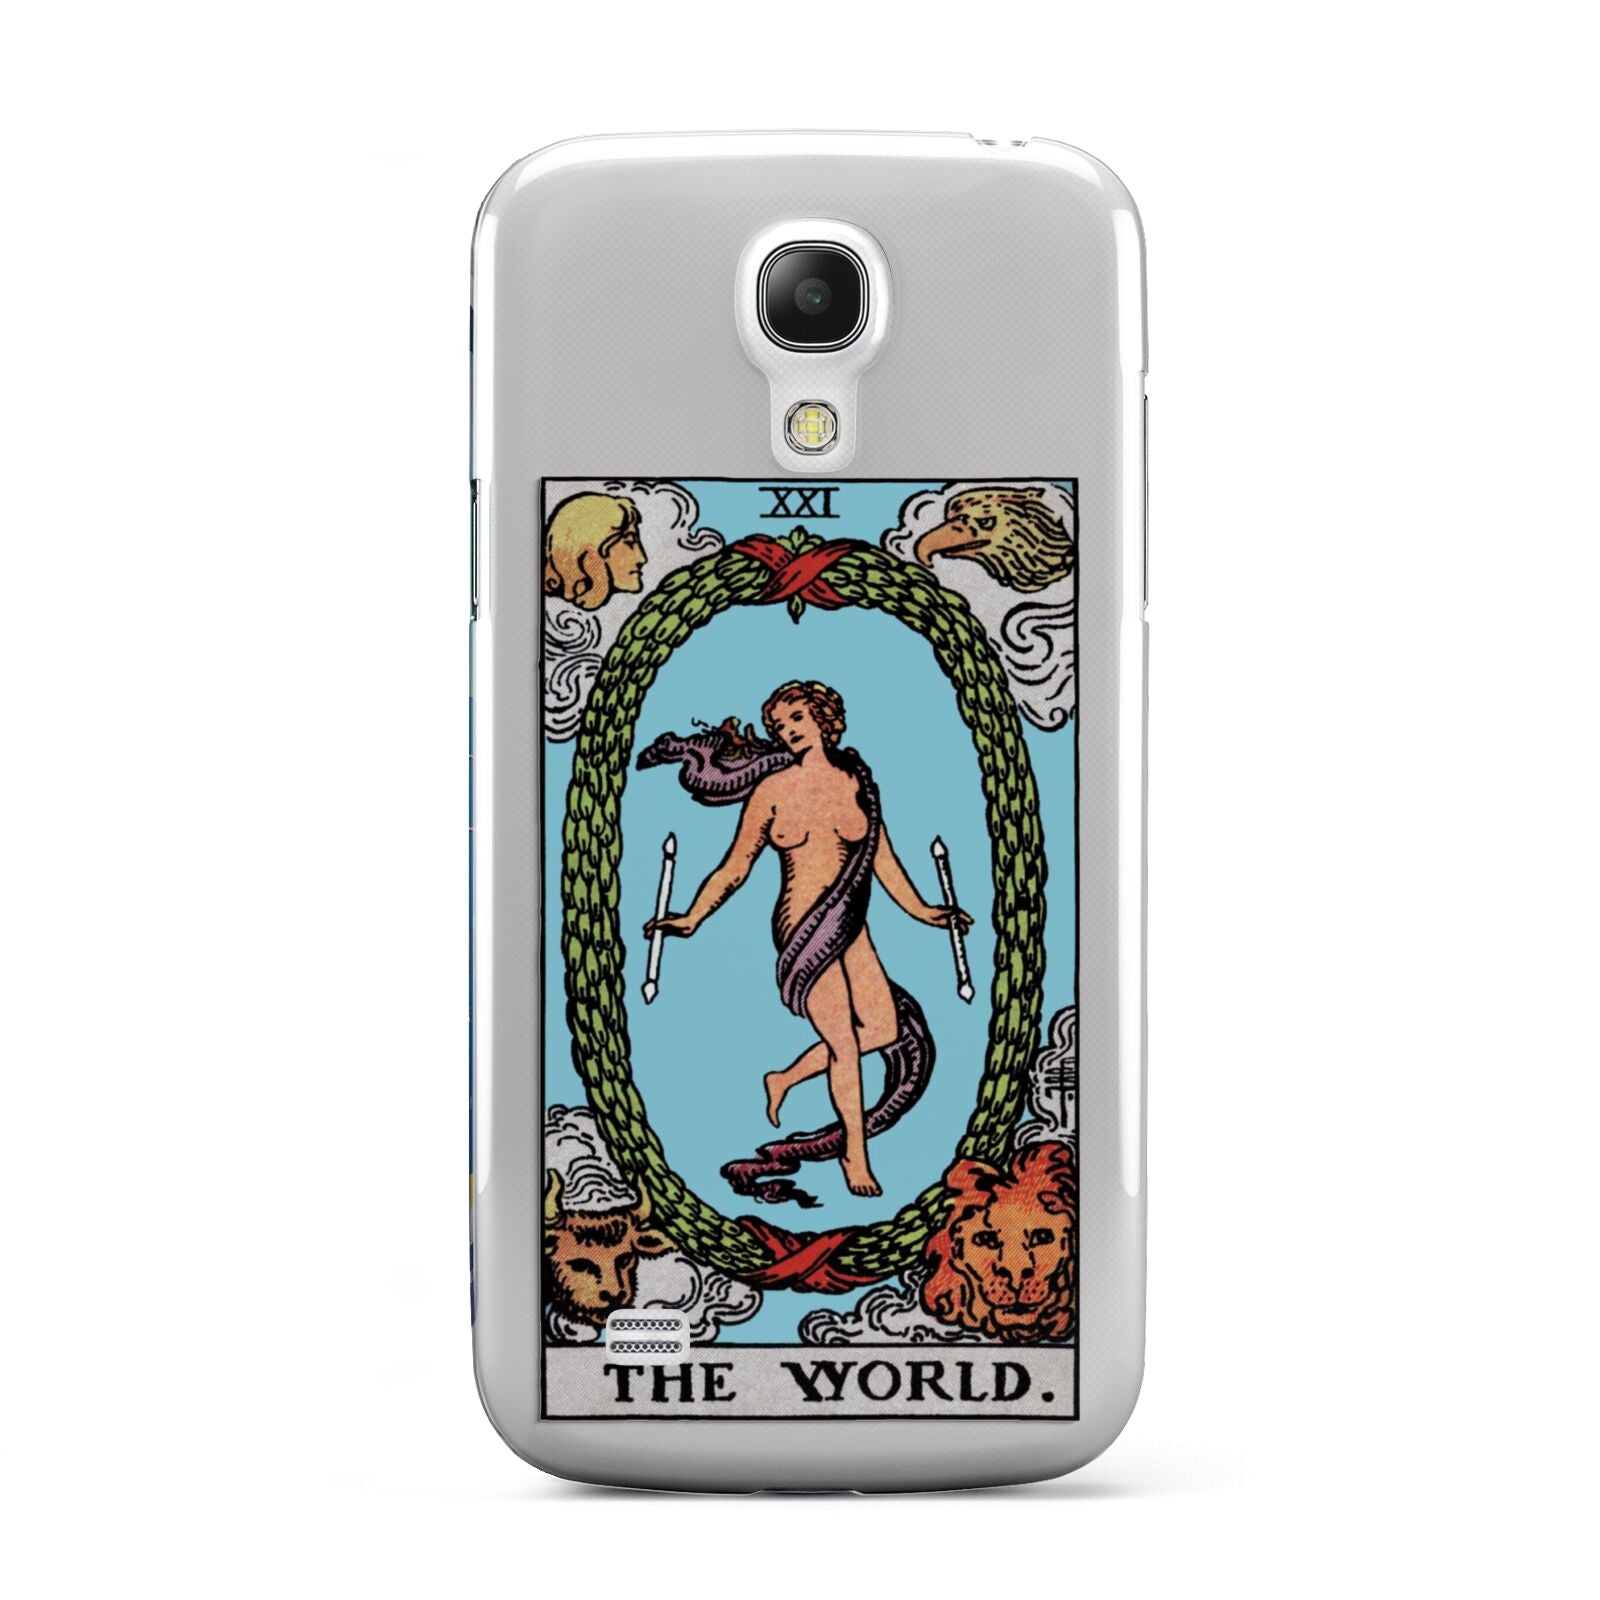 The World Tarot Card Samsung Galaxy S4 Mini Case